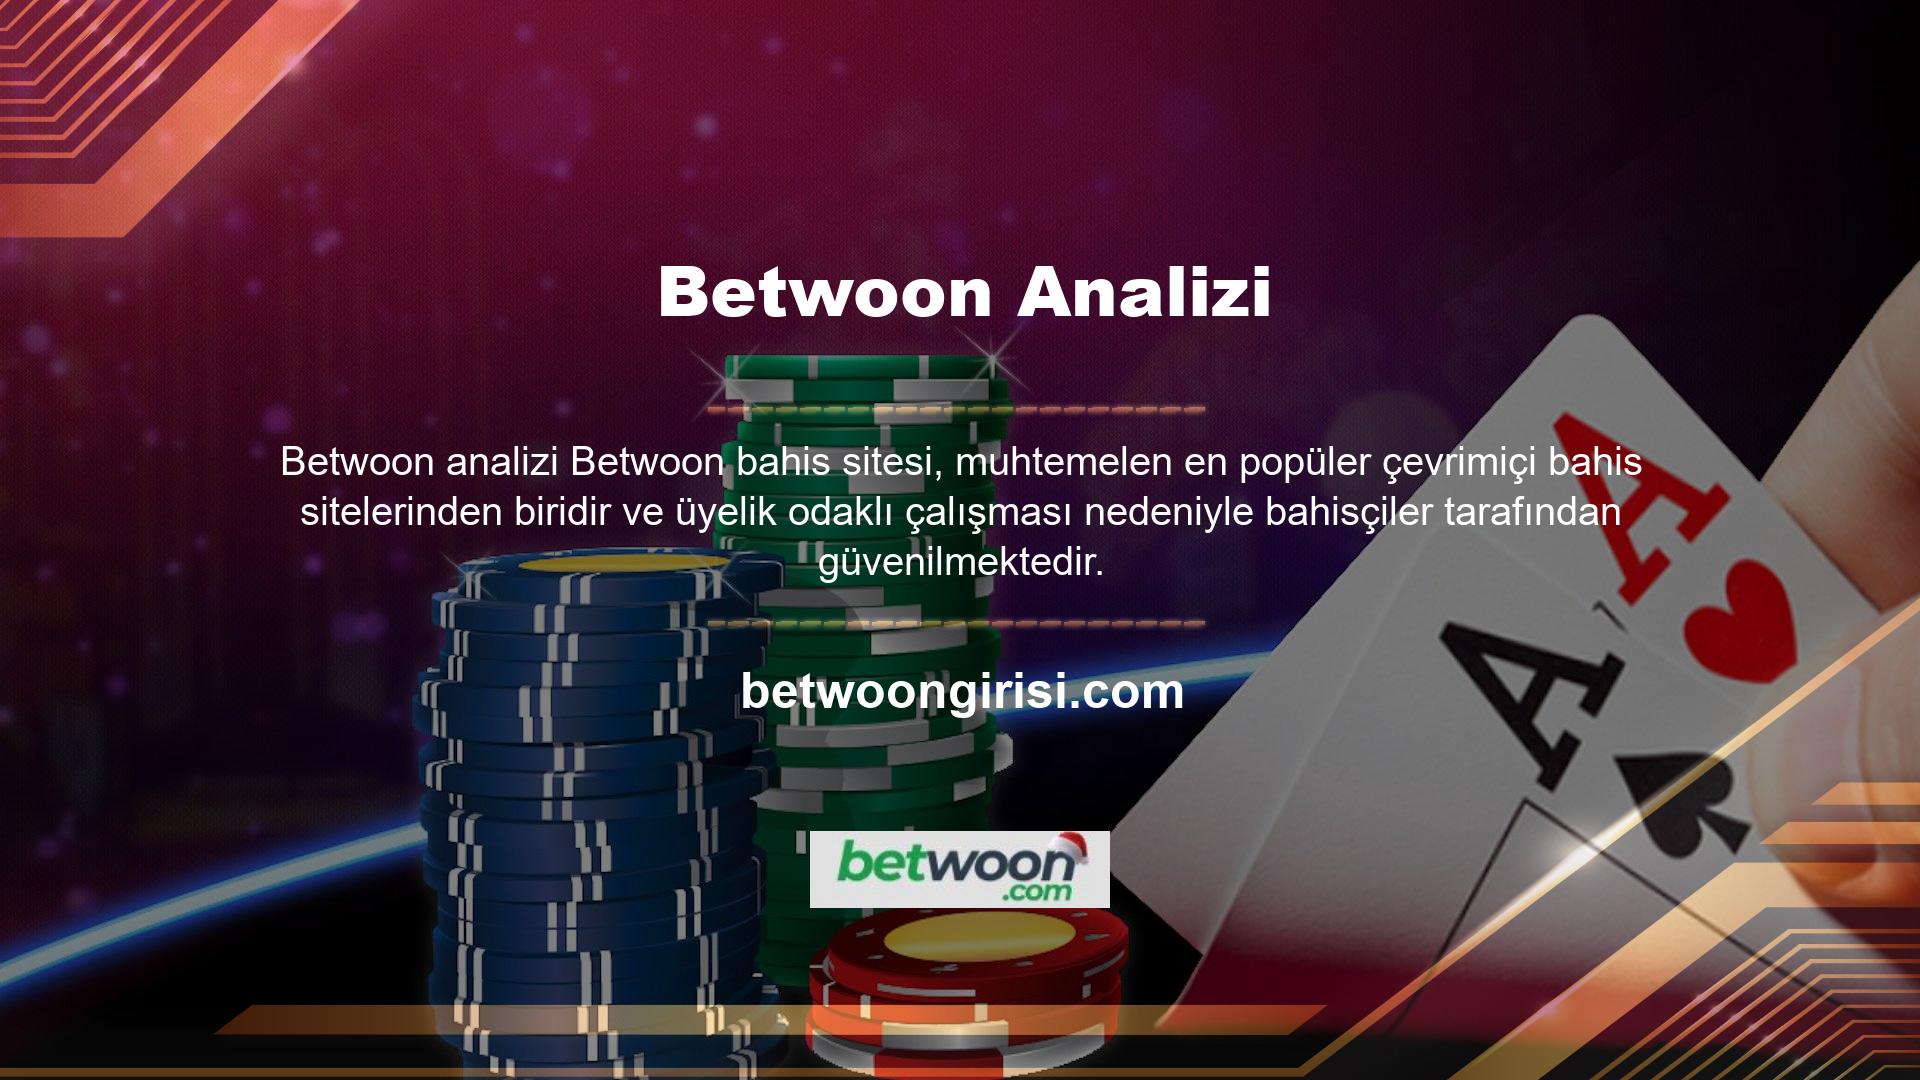 Casino siteleri online platformların en popüler alanlarından biridir